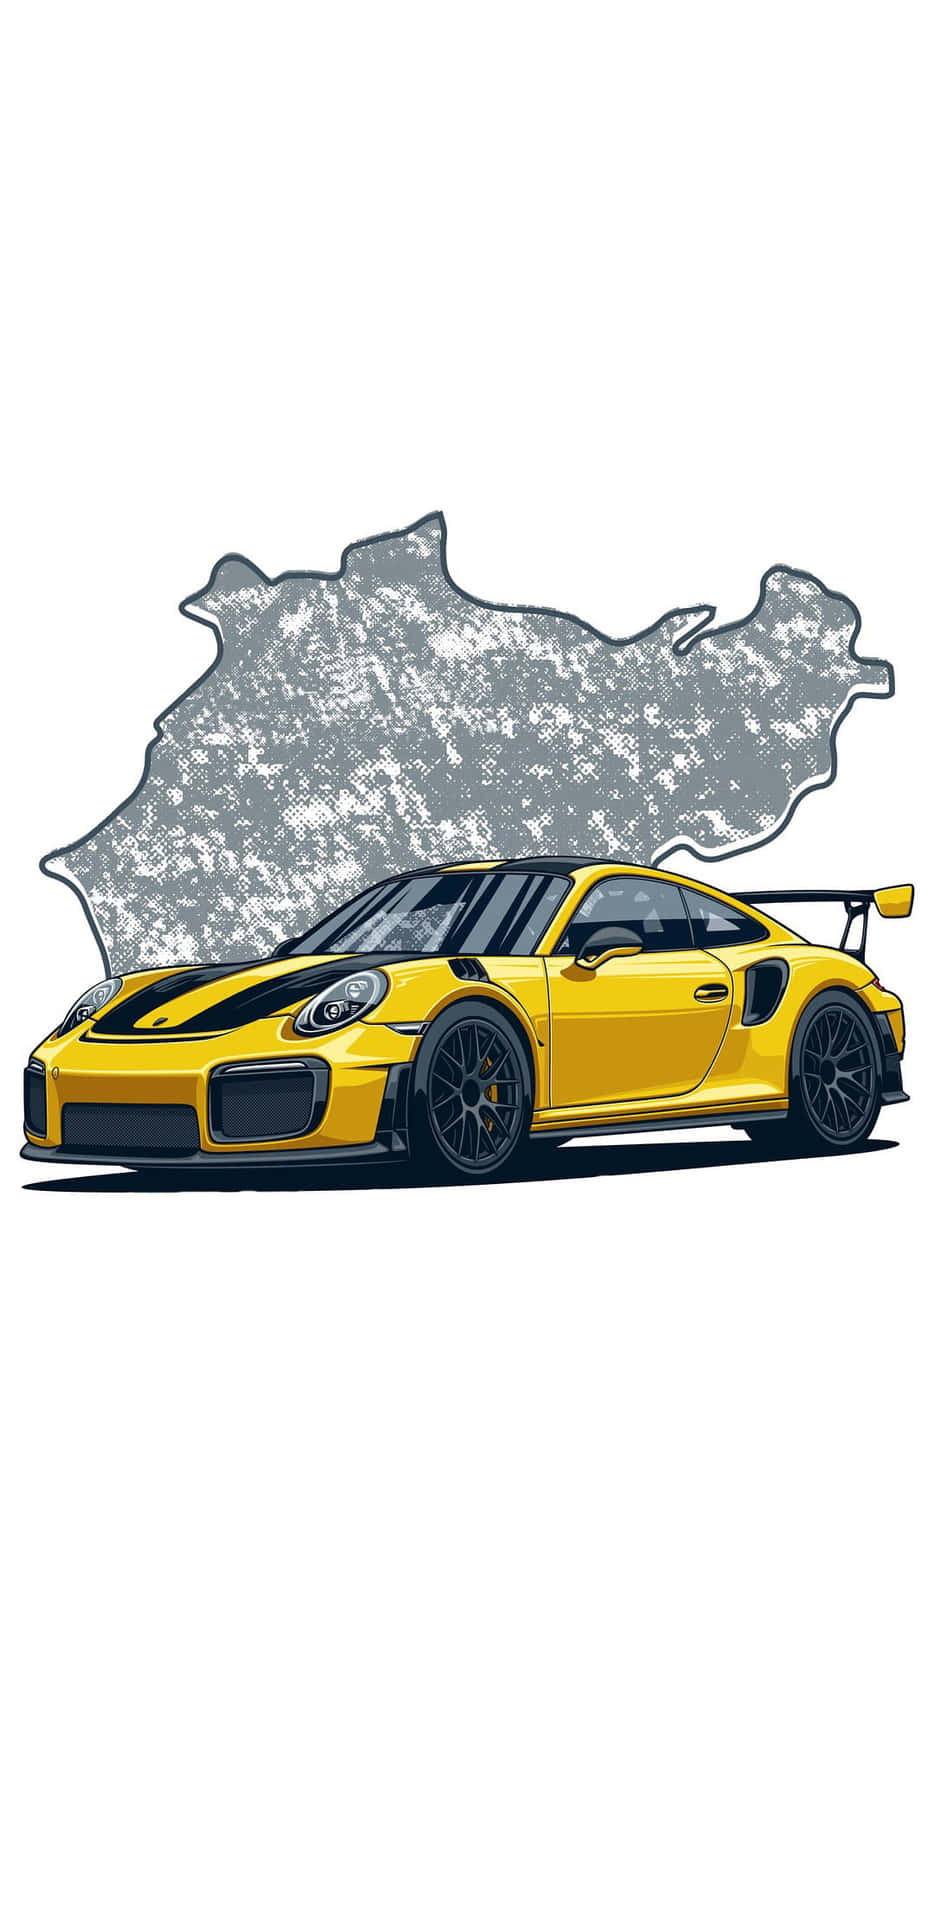 Porsche Gt3 Rs - Gt3 Rs - Porsche Gt3 Rs - Por Wallpaper